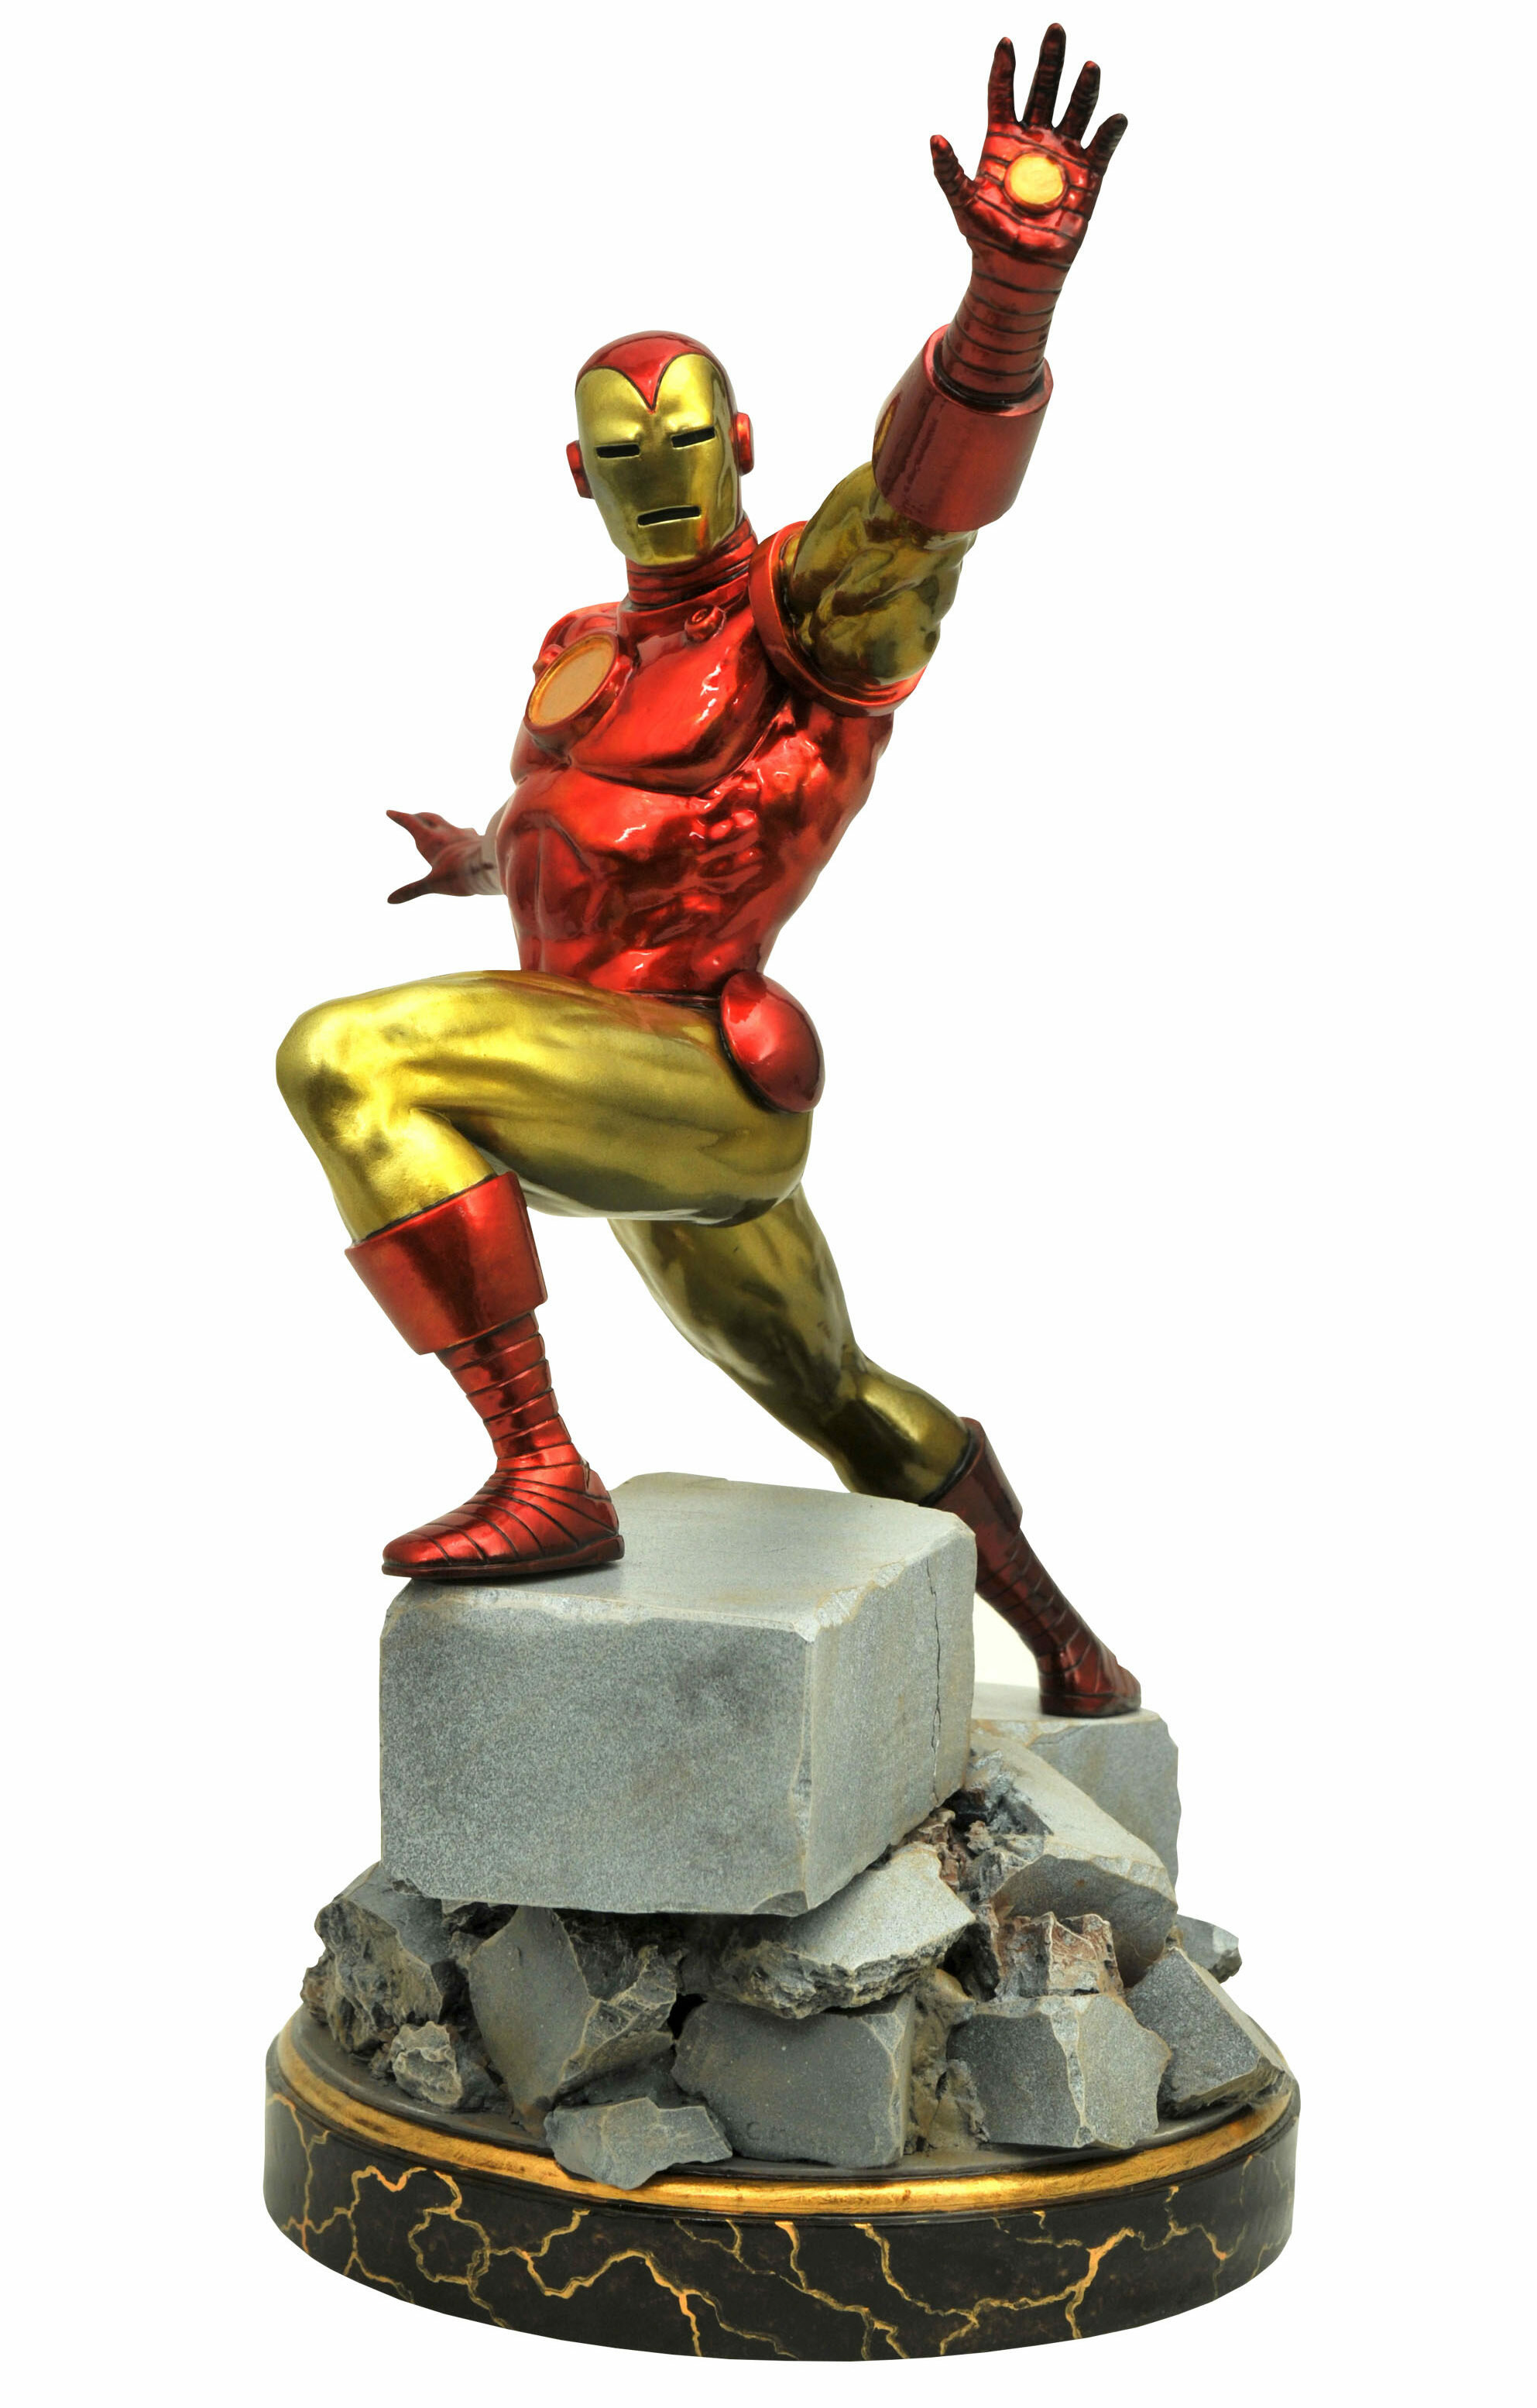 Diamond-Select-Toys-Iron-Man-Marvel-Premier-Collection-Statue-Classic-e1485452211608.jpg.4e6ba6a0648dd439649de1b3a4439205.jpg